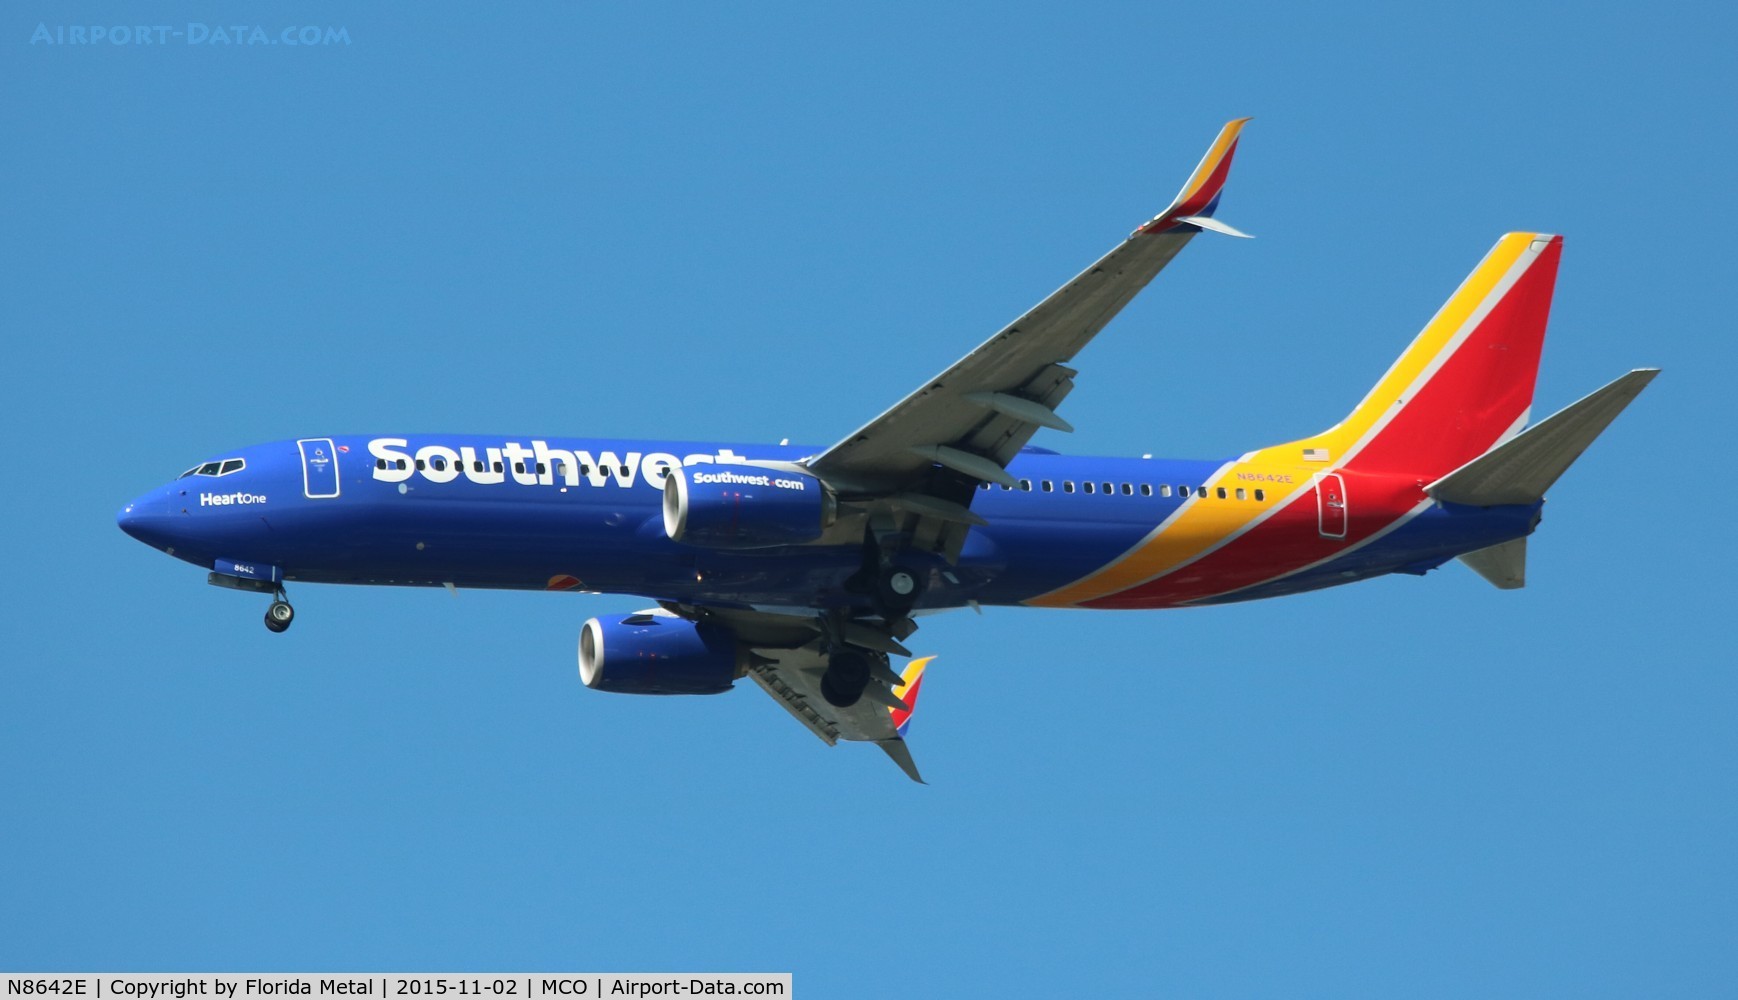 N8642E, 2014 Boeing 737-8H4 C/N 42525, Southwest